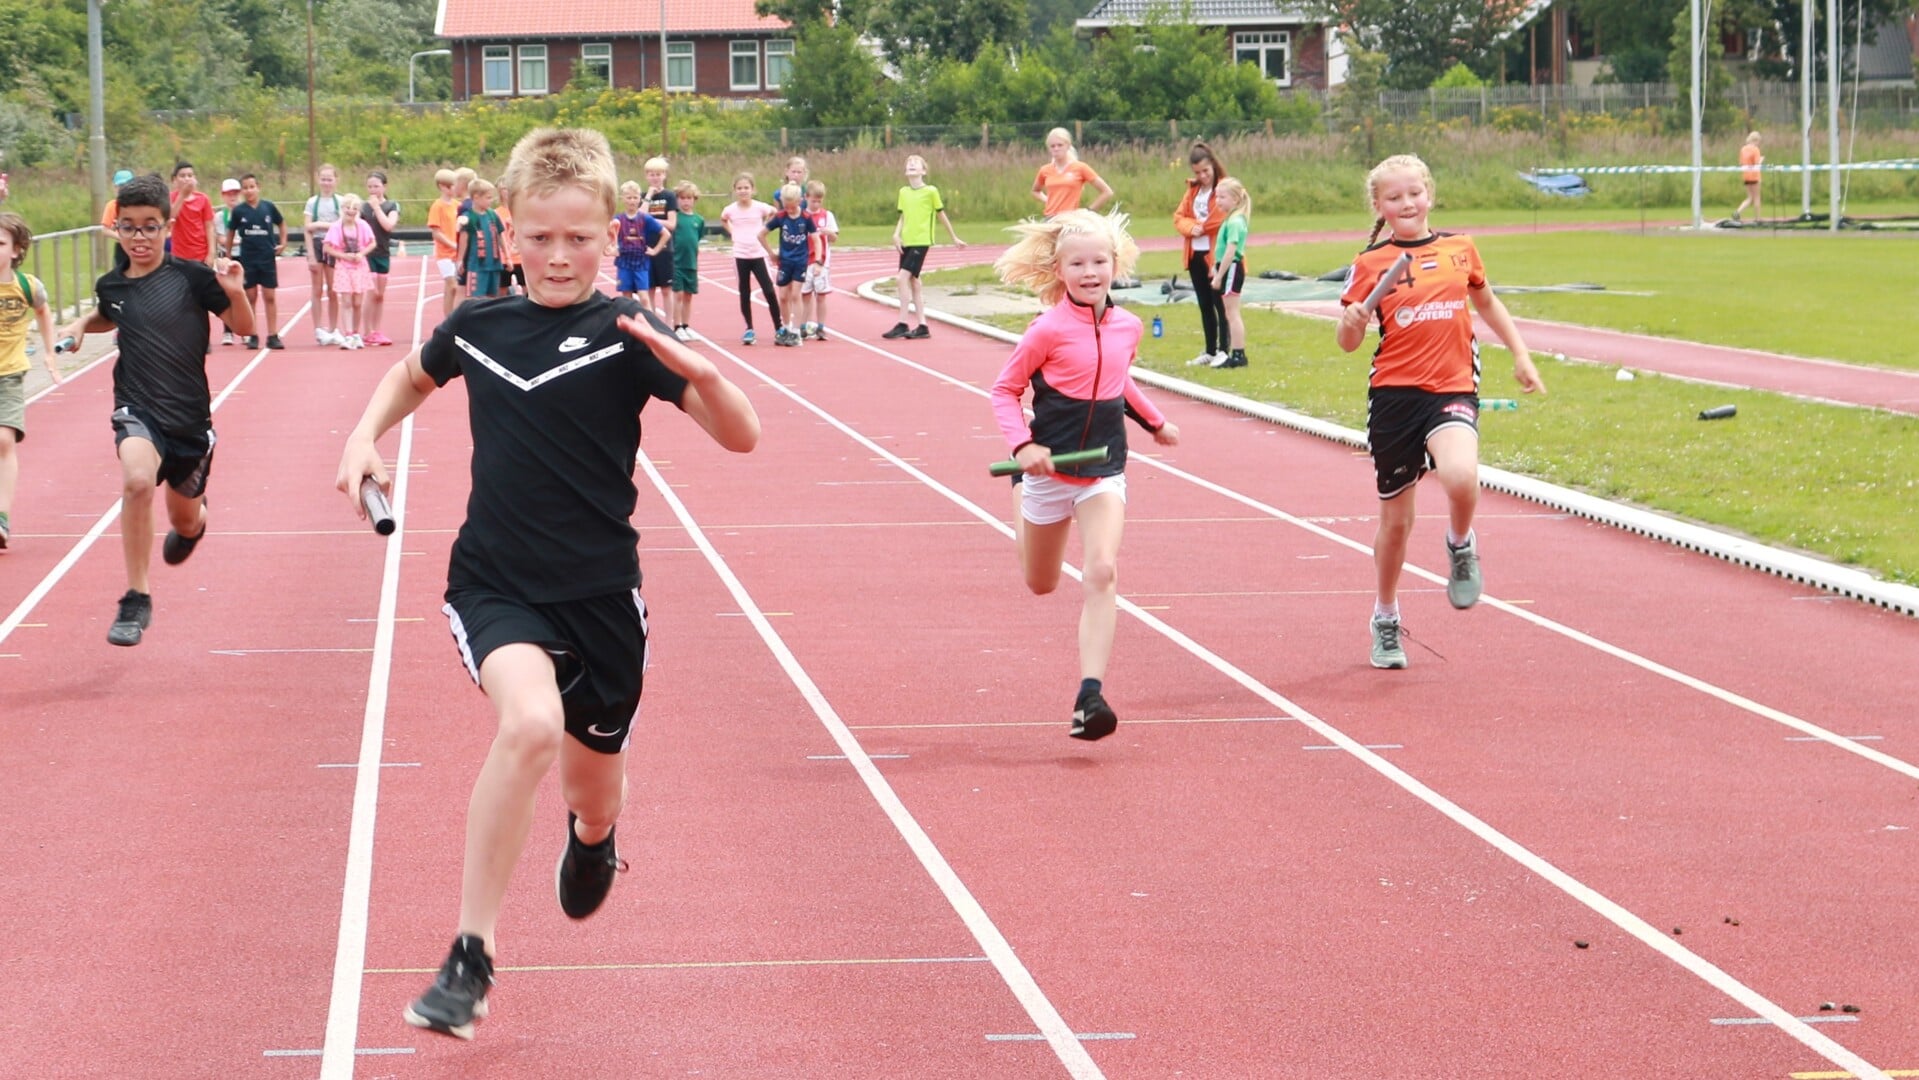 Gratis sportieve activiteiten in de meivakantie voor basisschoolkinderen uit Heemskerk en Castricum. 